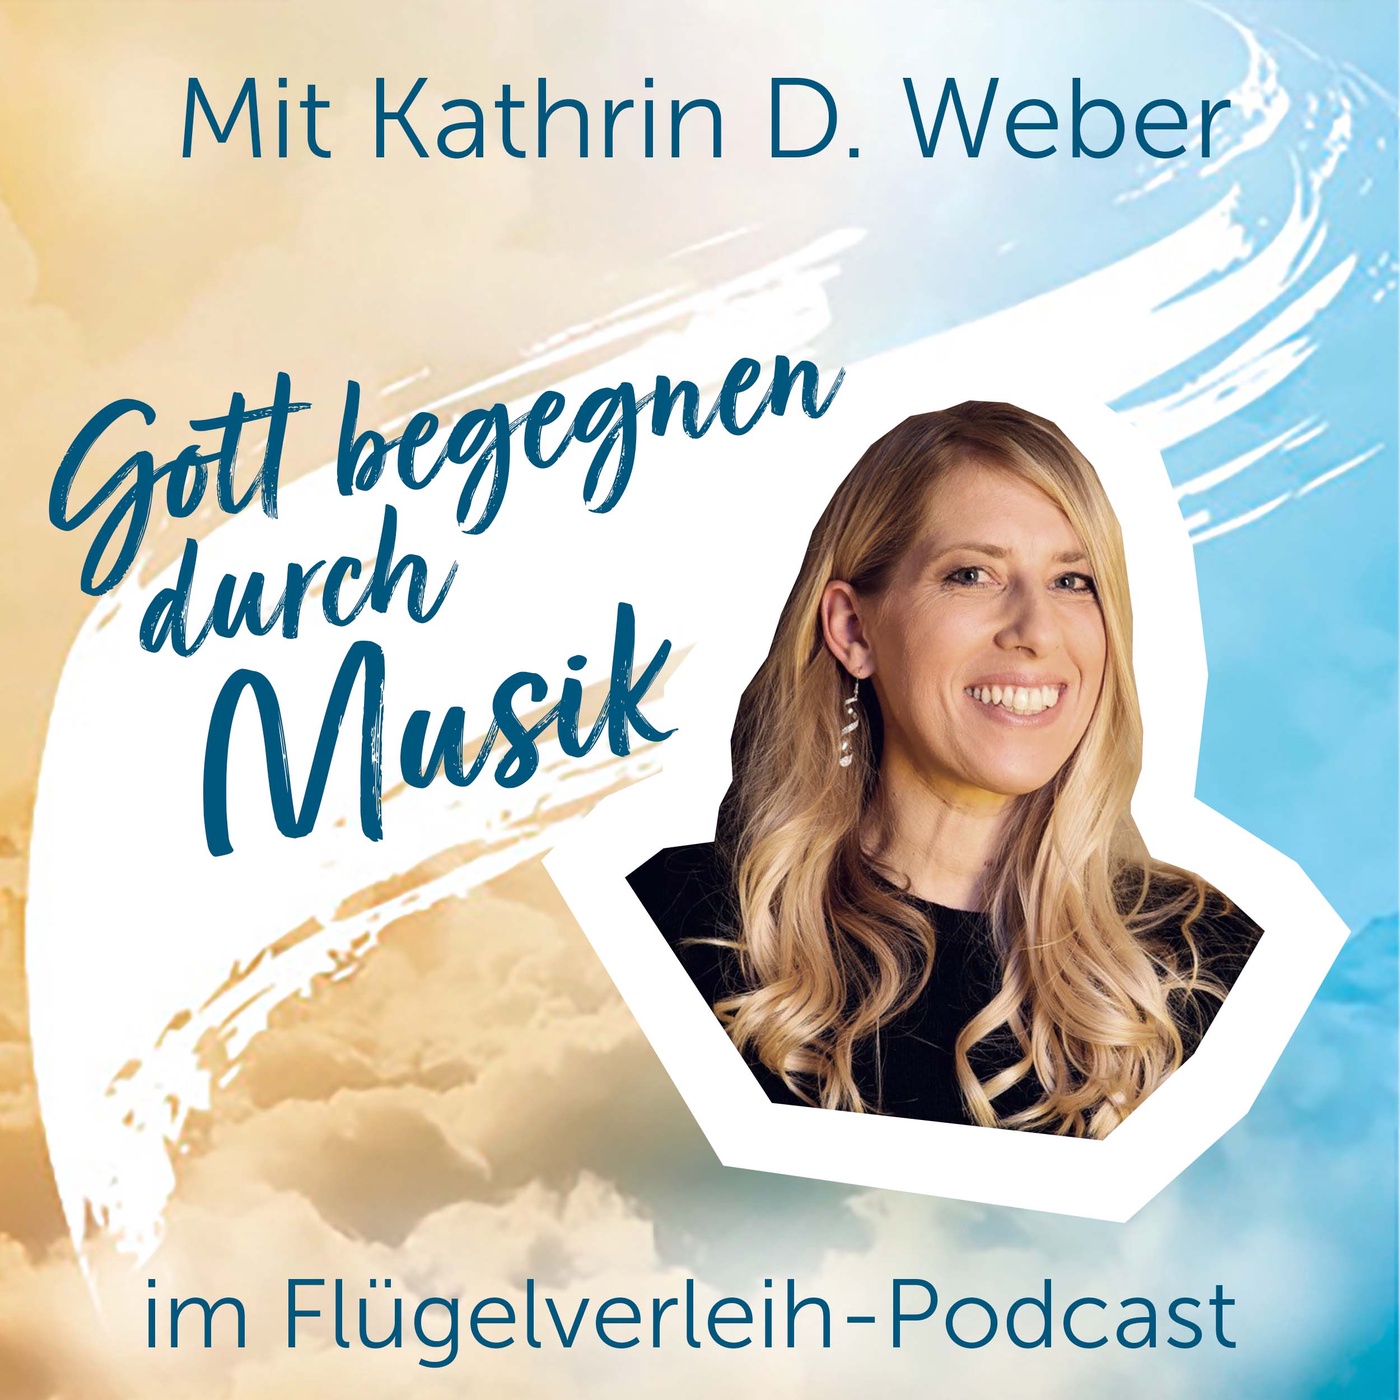 Gott begegnen durch Musik – mit Kathrin D. Weber